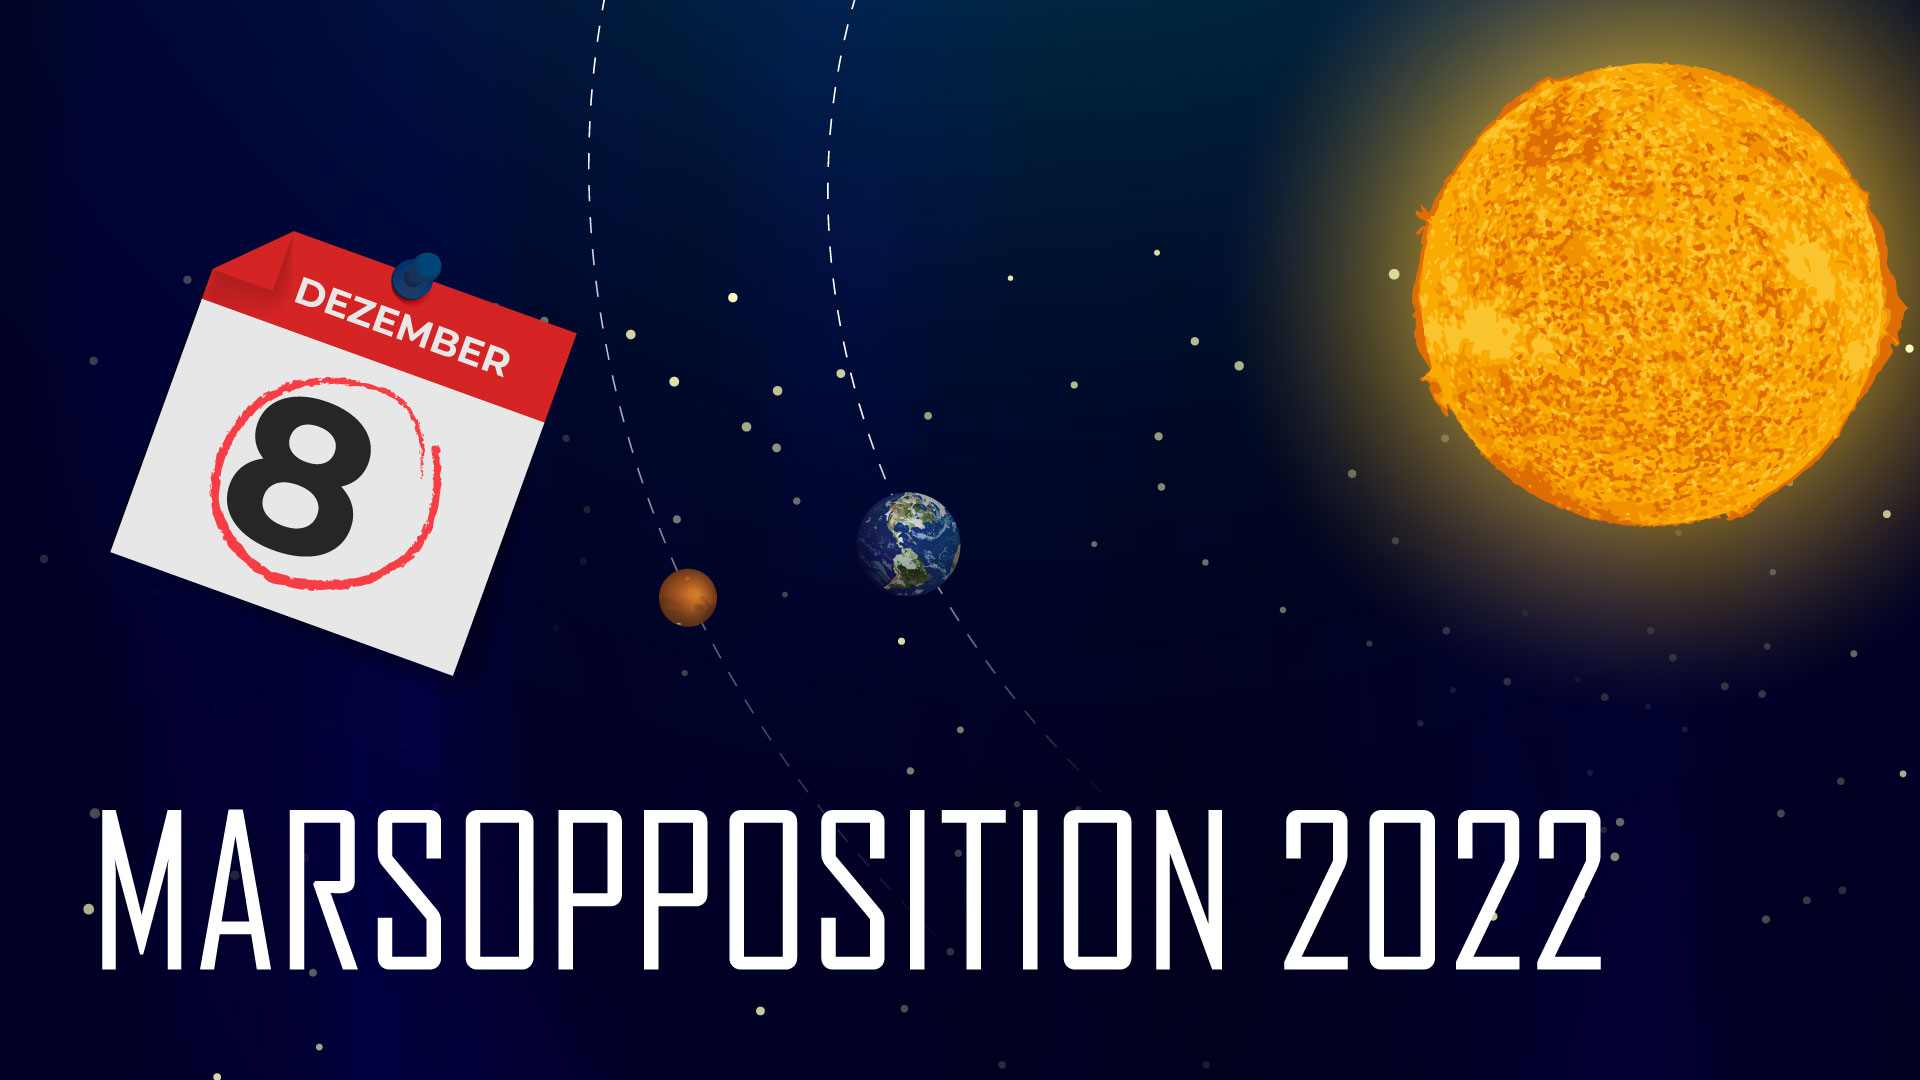 Marsopposition 2022 DE Teaser